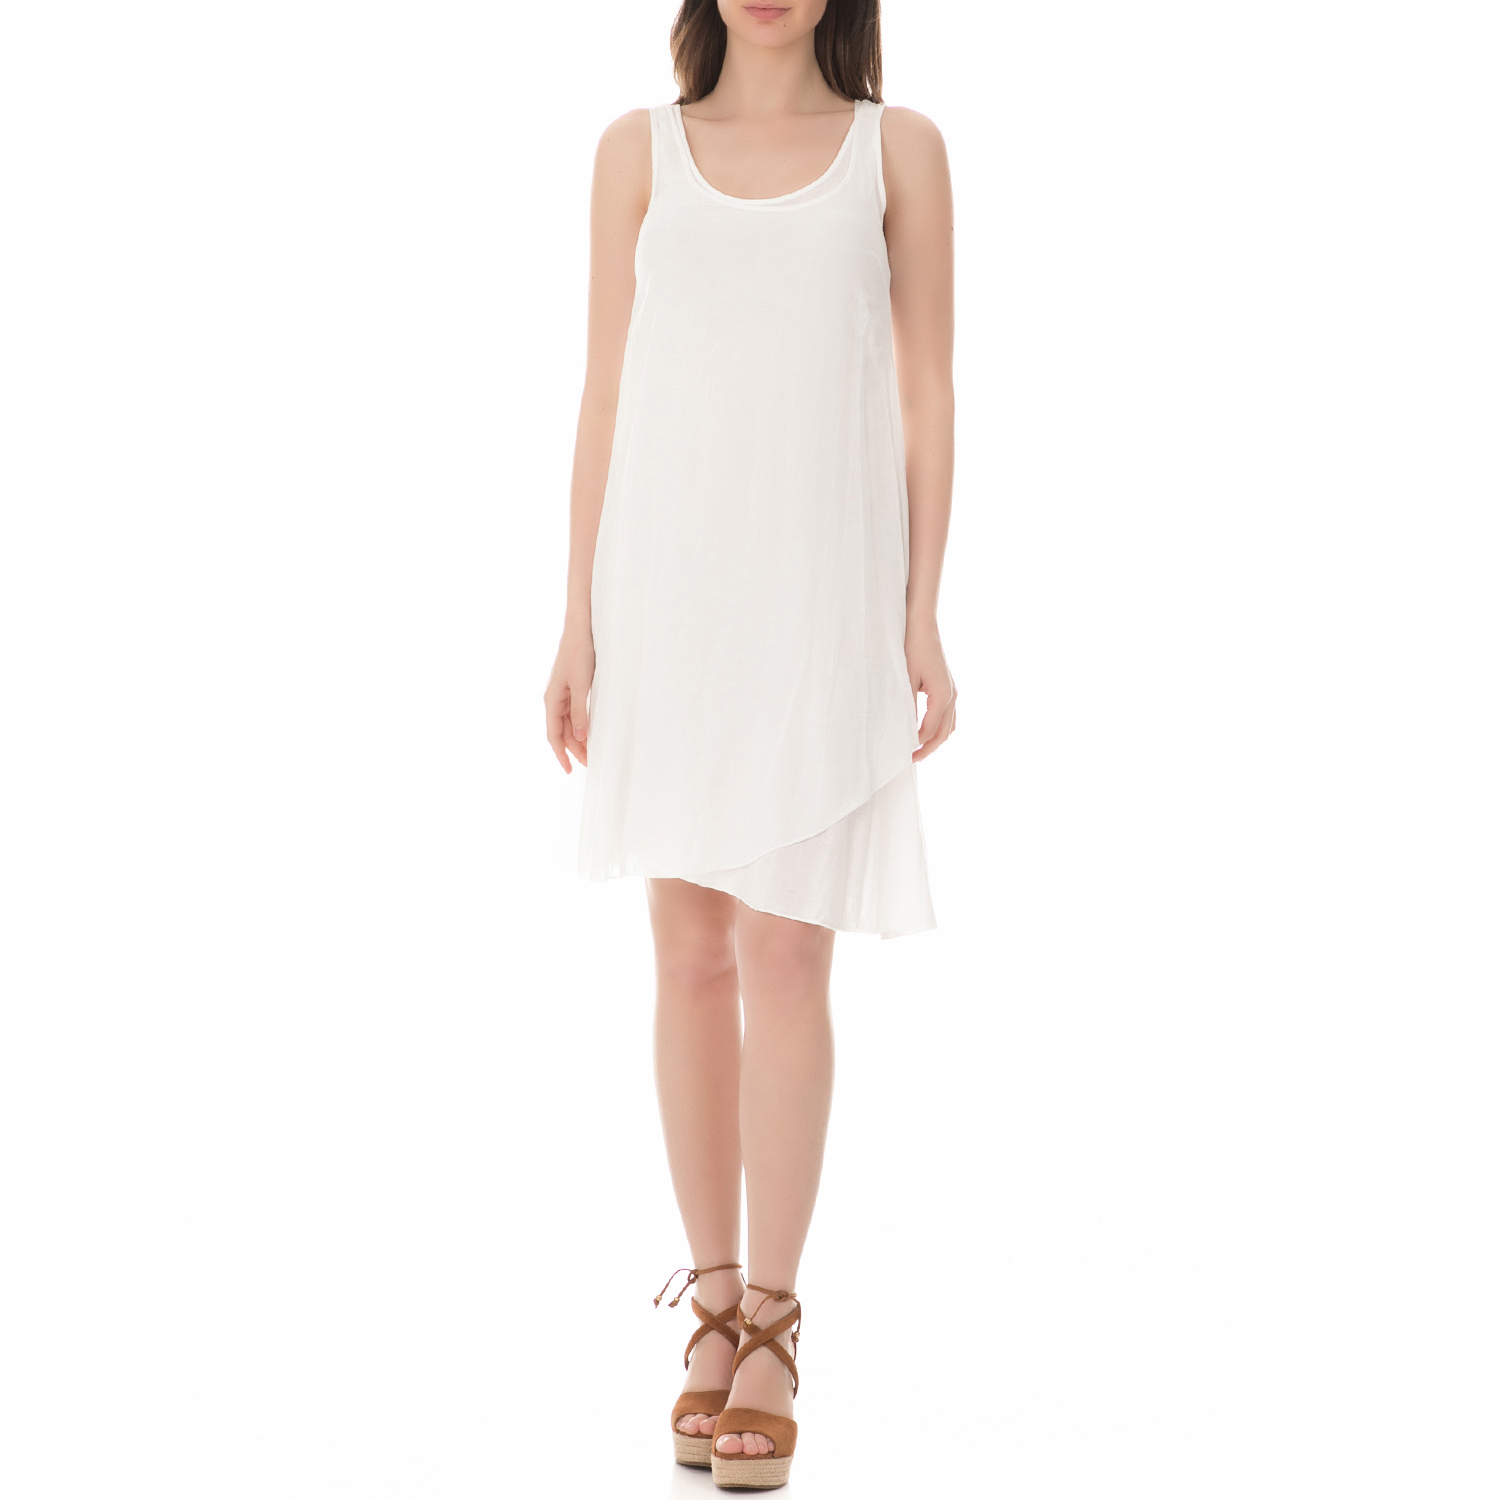 Γυναικεία/Ρούχα/Φορέματα/Μίνι BRAEZ - Γυναικείο μίνι φόρεμα BRAEZ λευκό